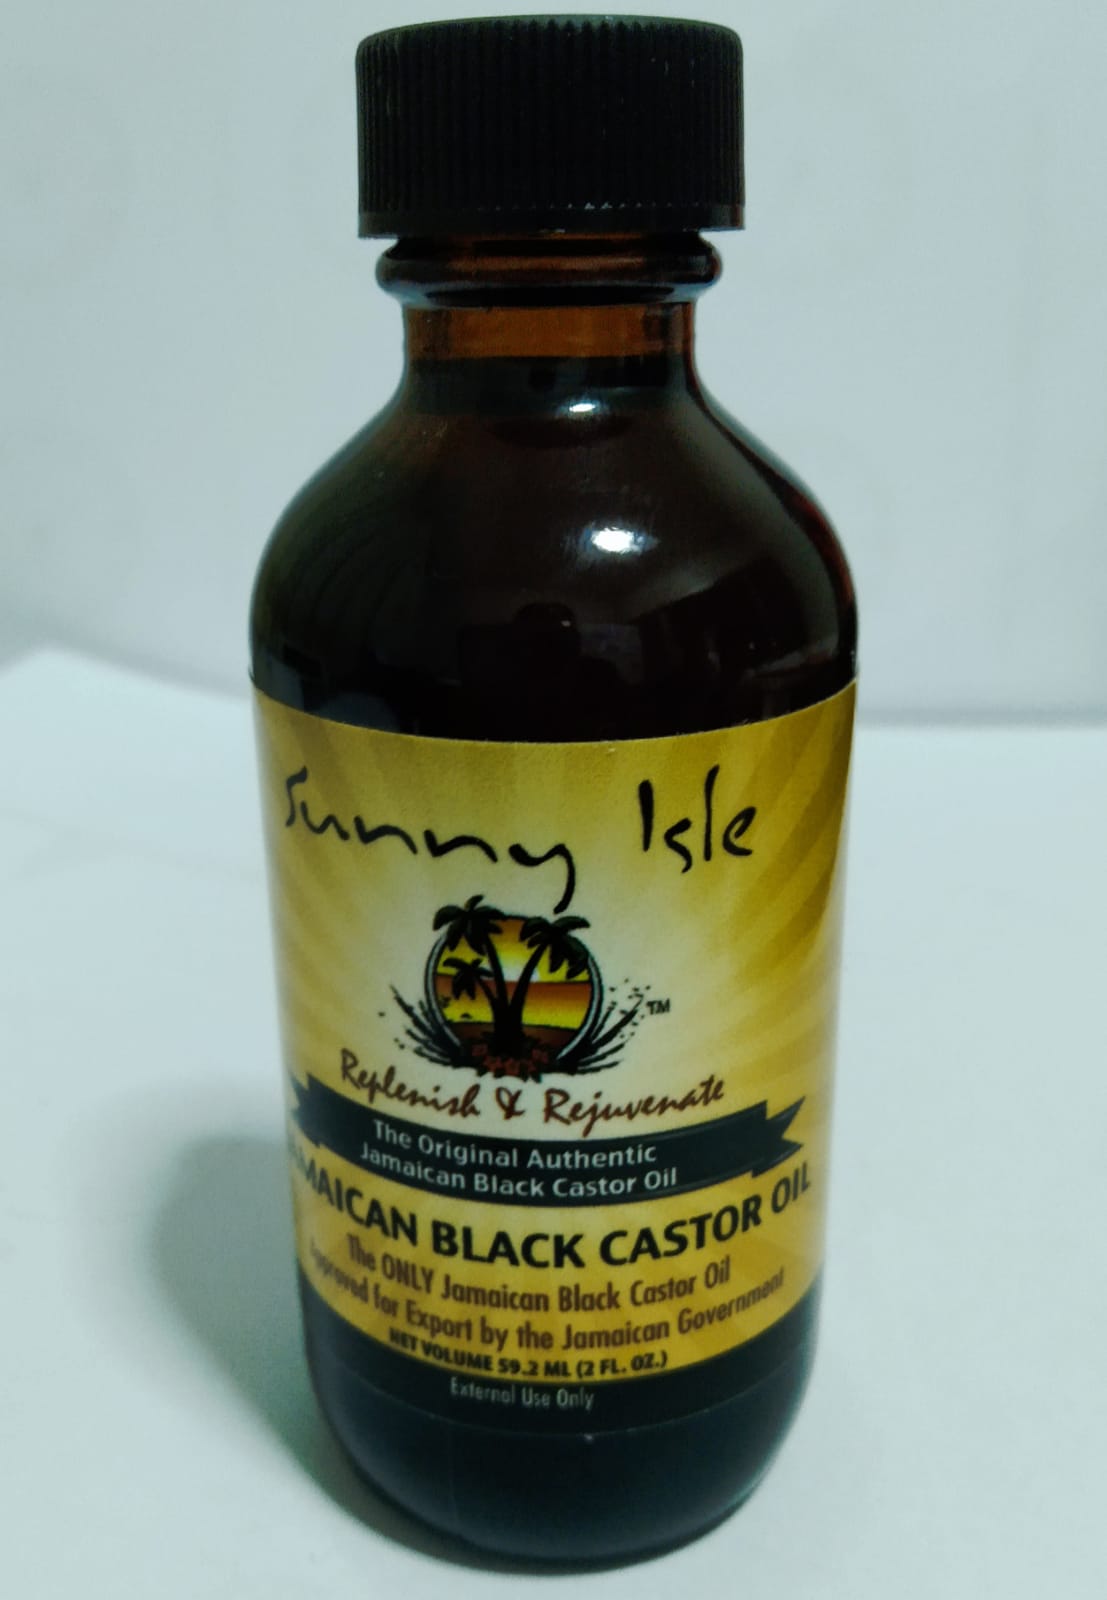 แนะนำ Sunny Isle Jamaican Black Castor Oil